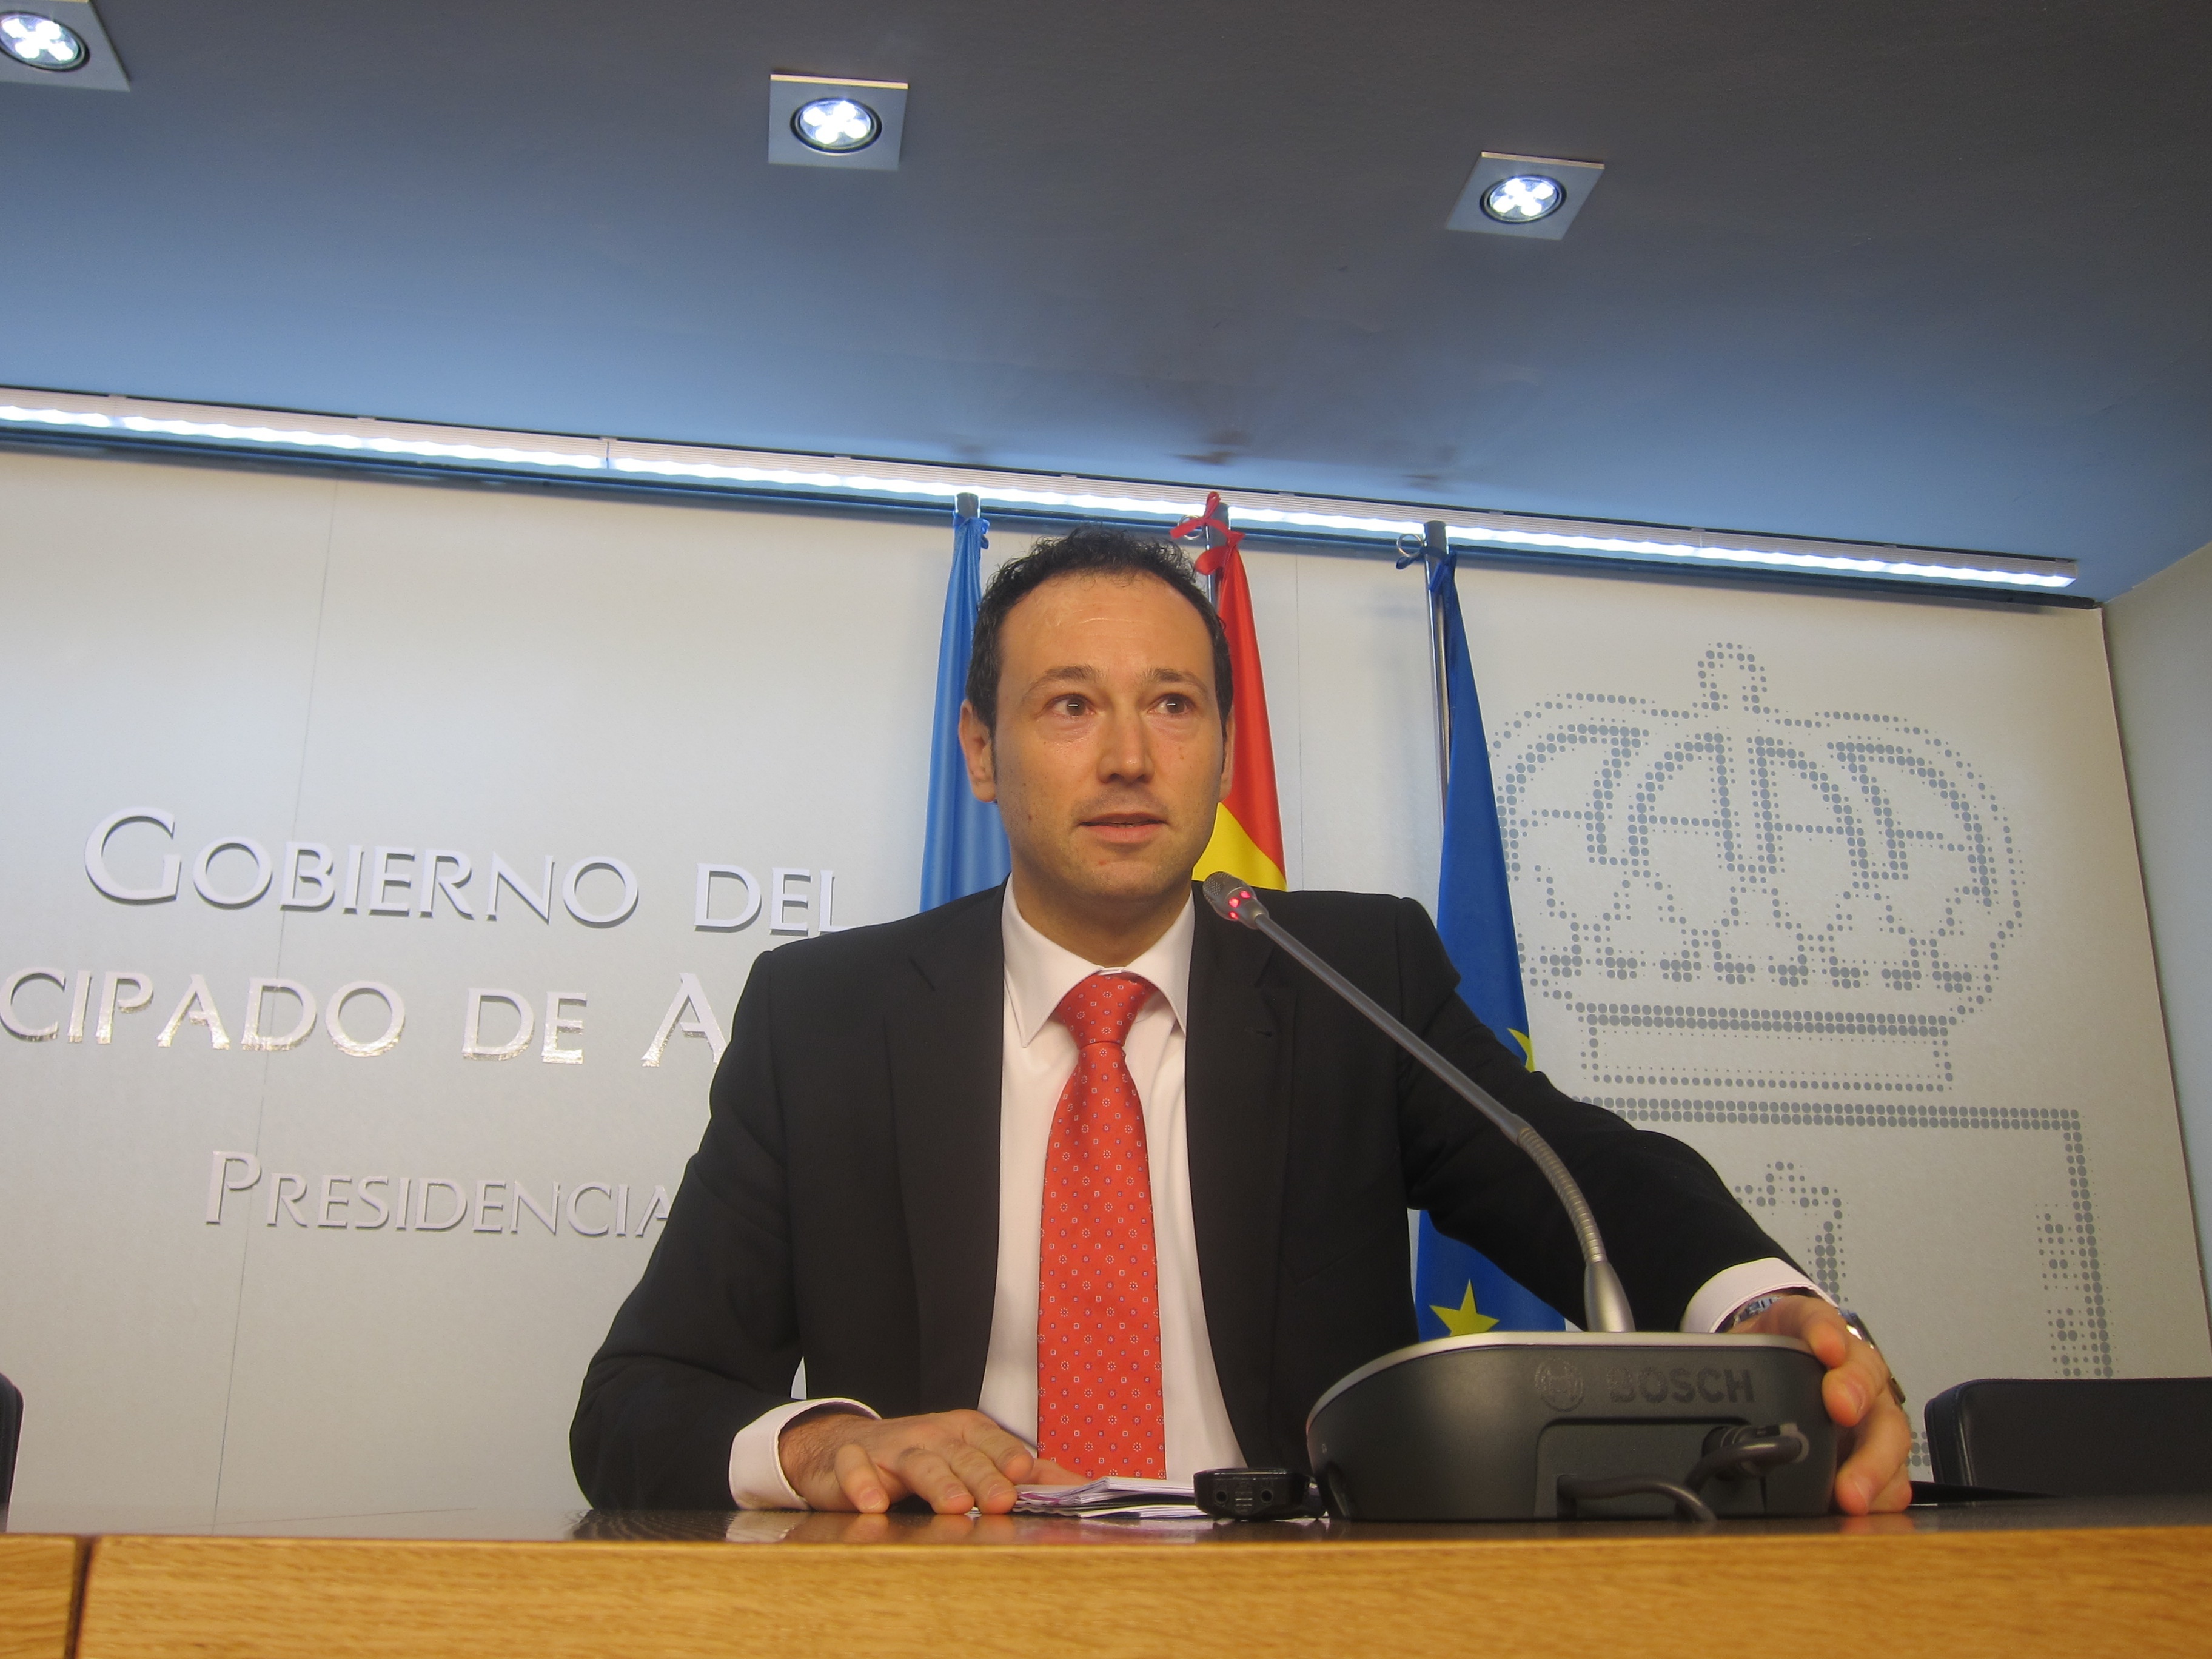 El Gobierno asturiano invita a IU y UPyD a negociar los presupuestos de 2014